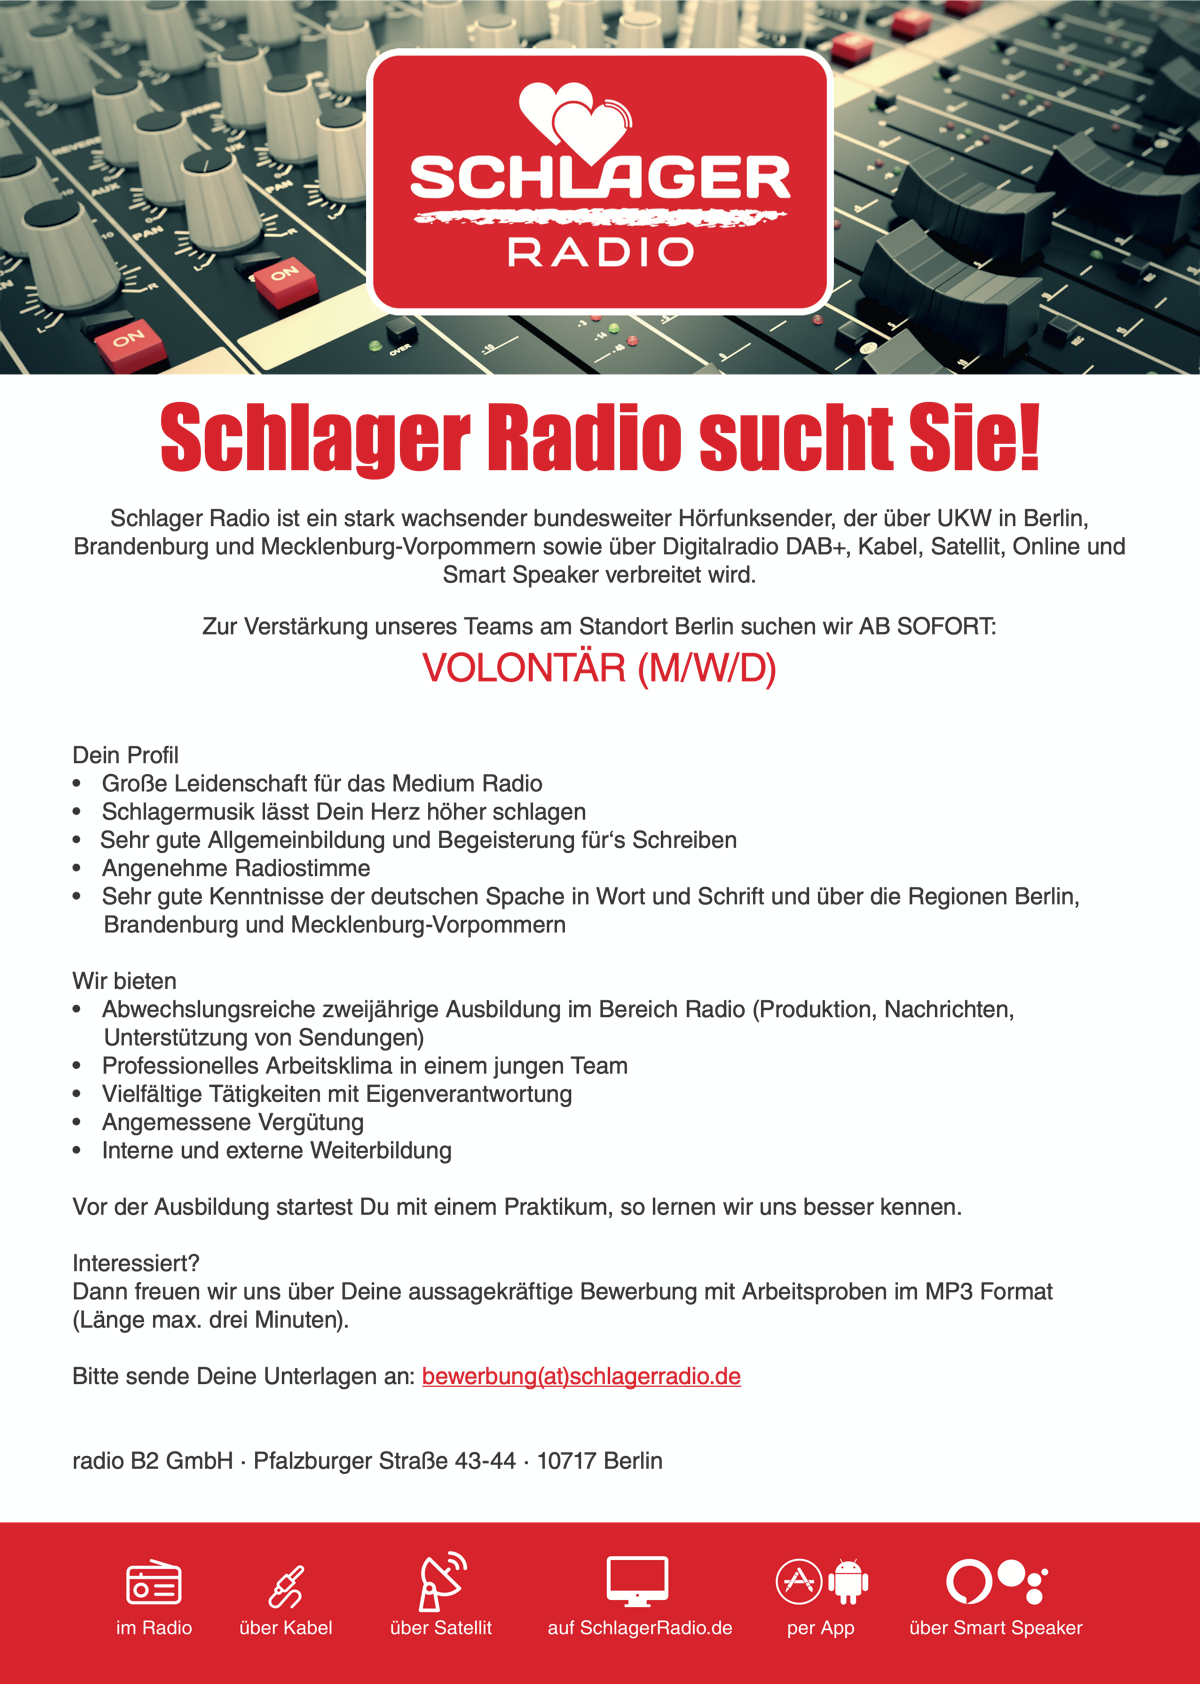 Schlager Radio sucht Volontär (m/w/d)